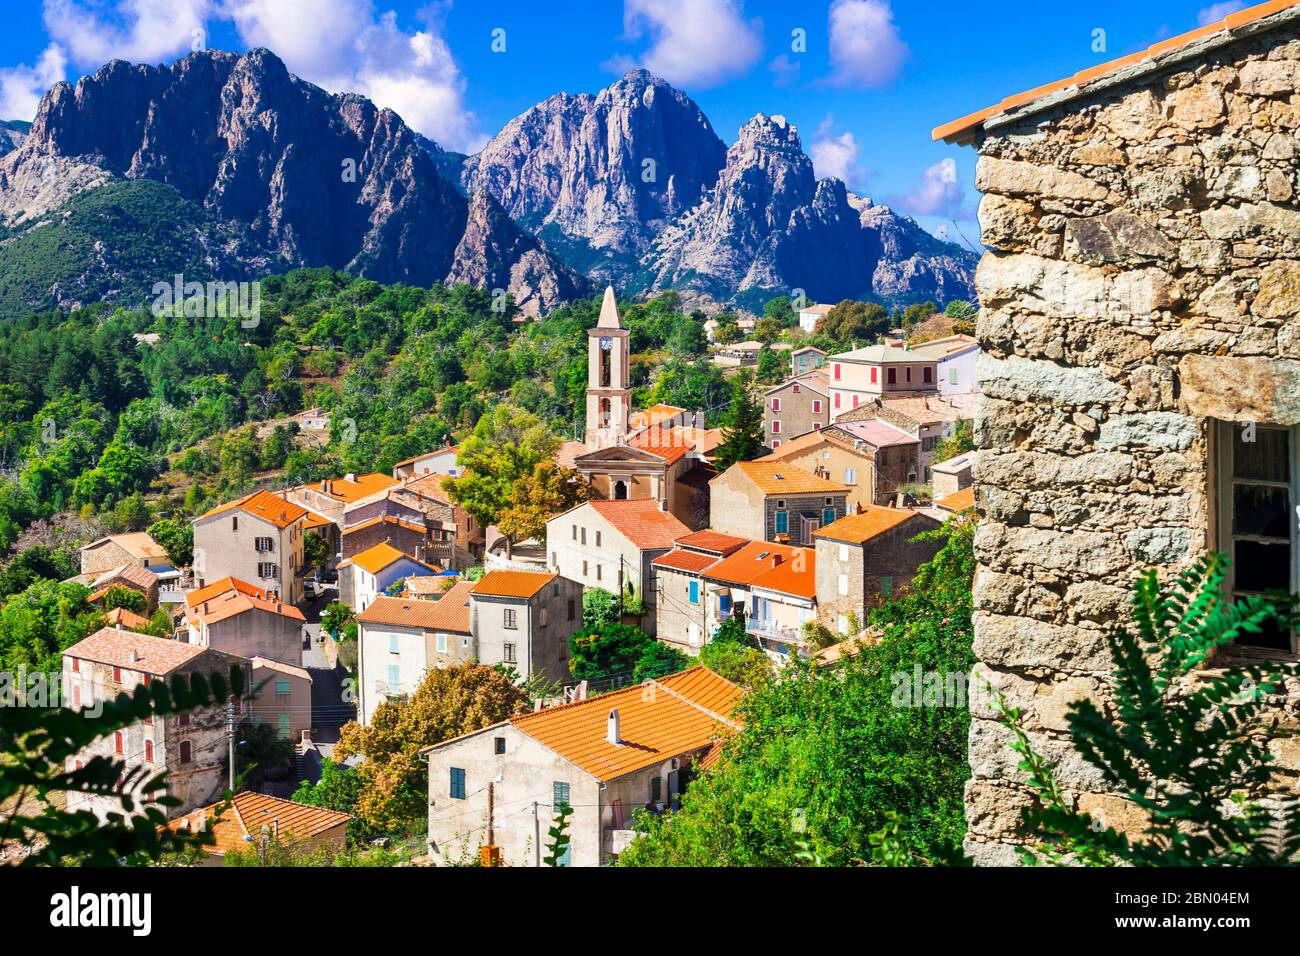 Evisa - petit village de montagne pittoresque dans de splendides montagnes de l'île Corse, France. Banque D'Images